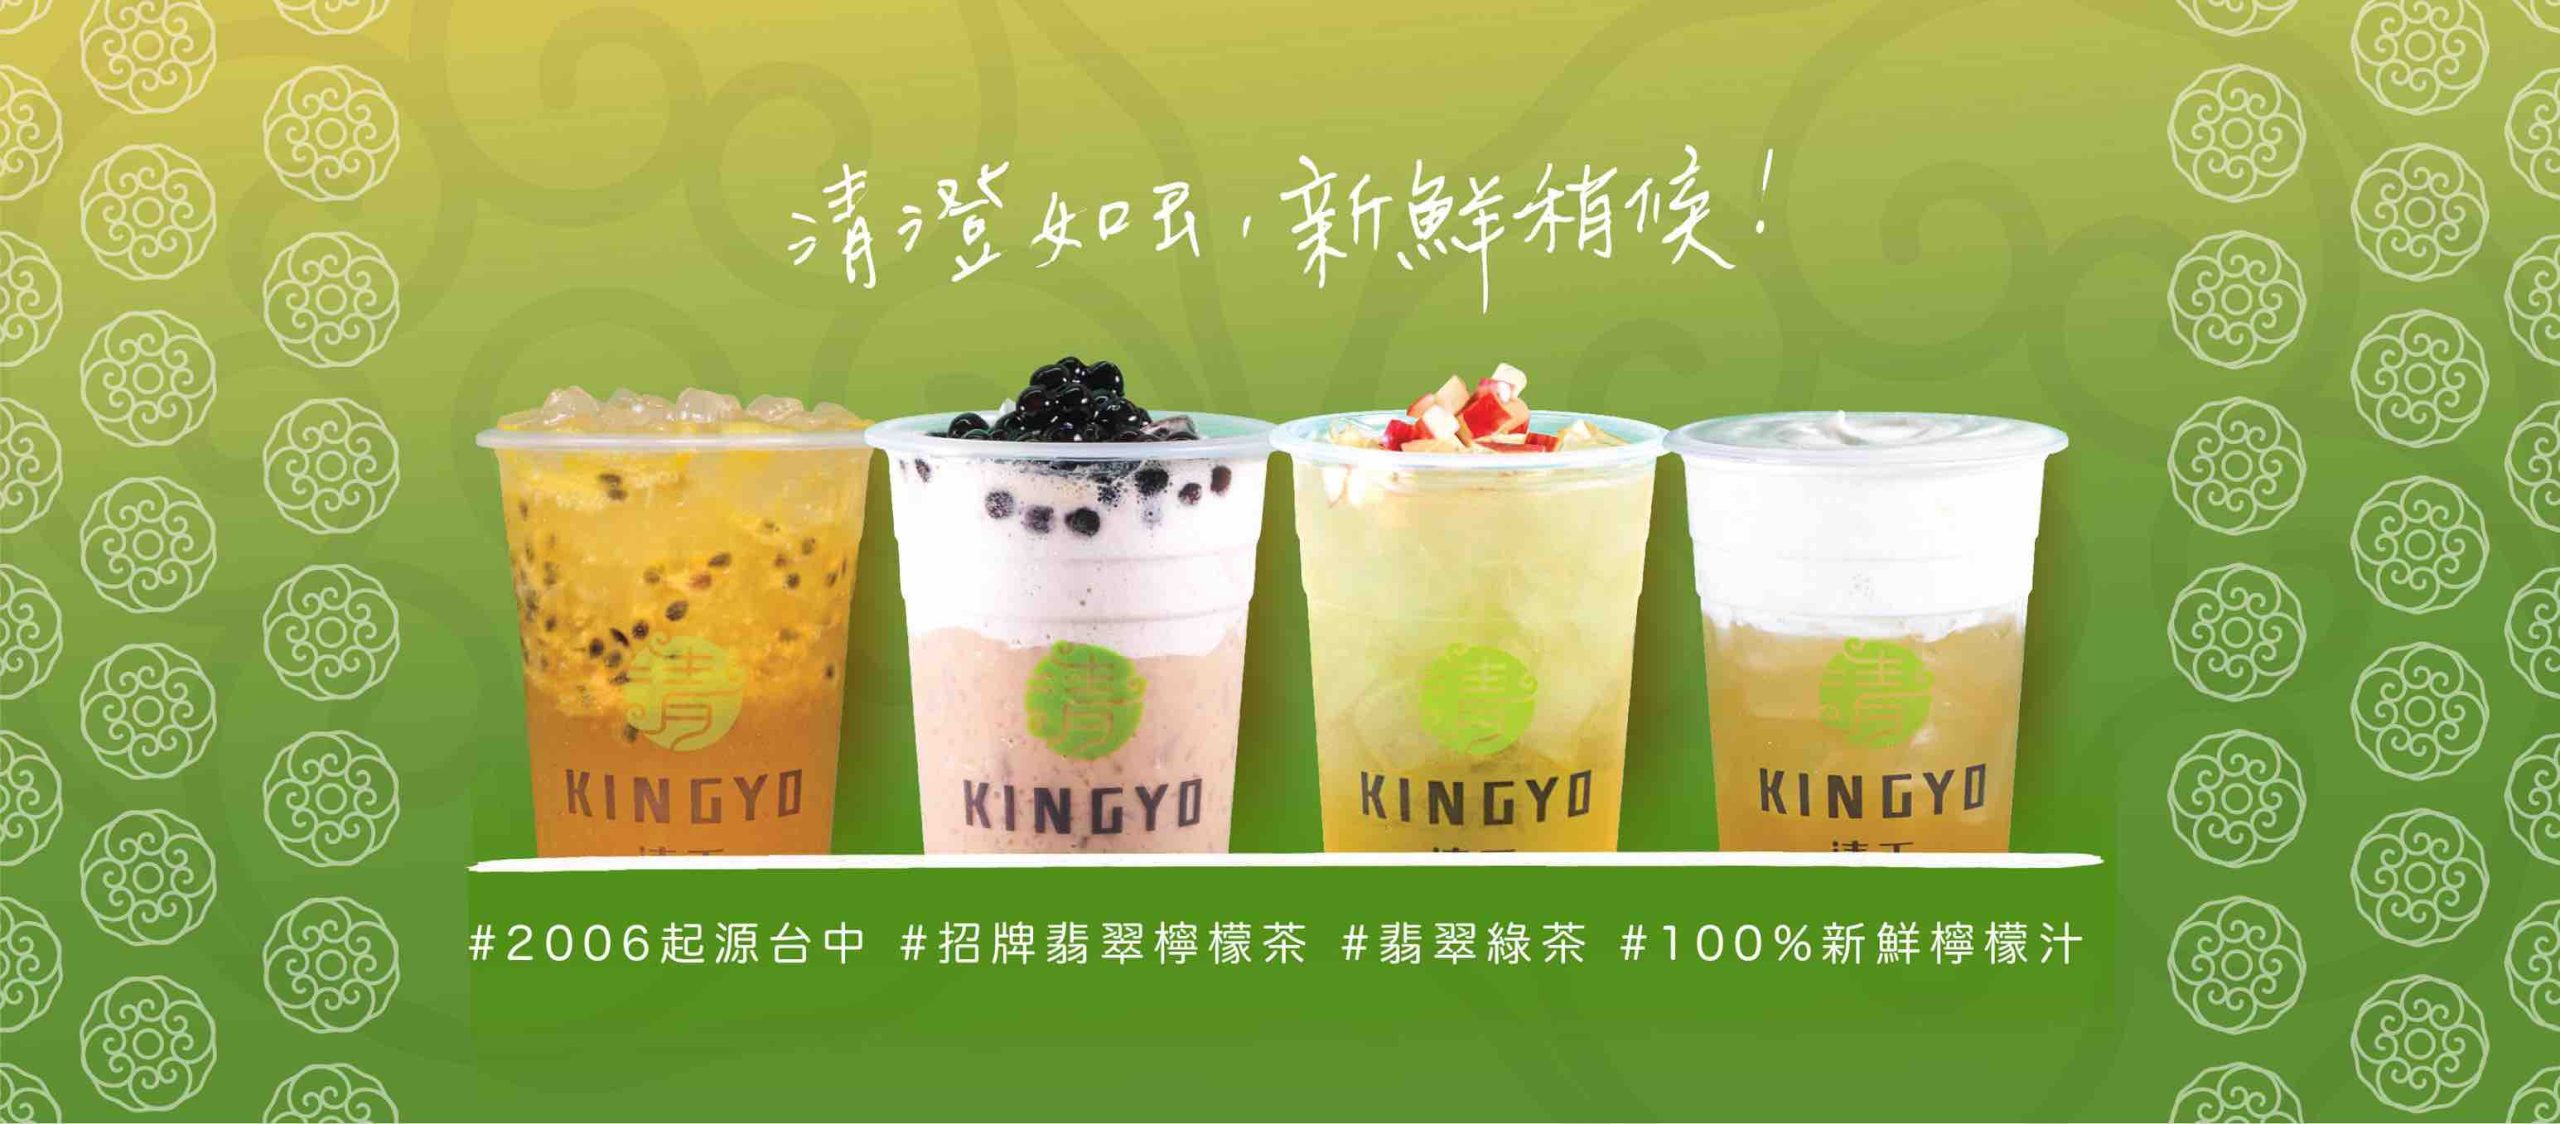 清玉好茶Kingyo的特許經營香港區加盟店項目4